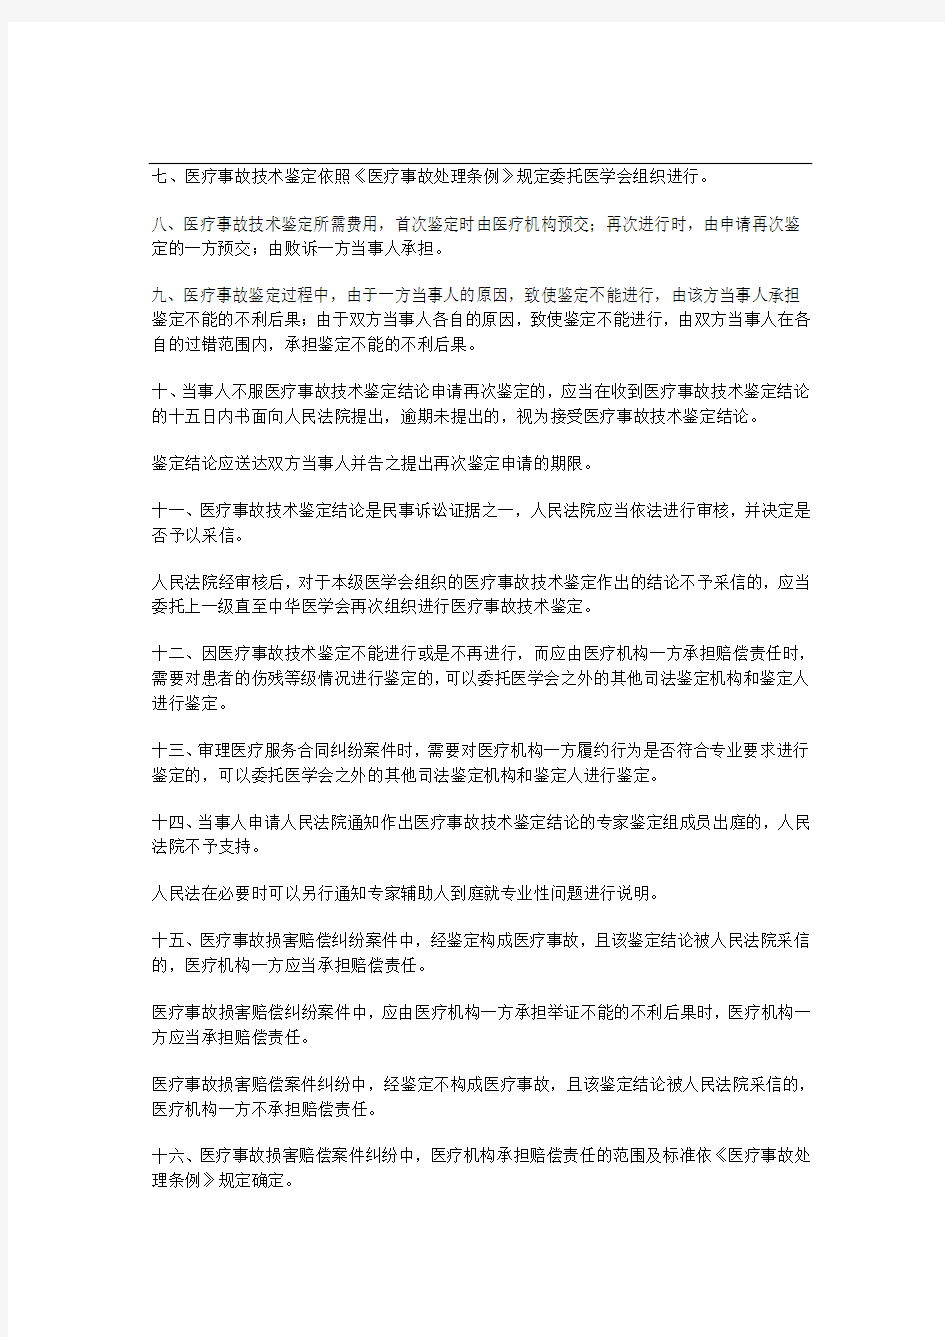 深圳市中级人民法院关于审理医疗纠纷案件指导意见(试行)